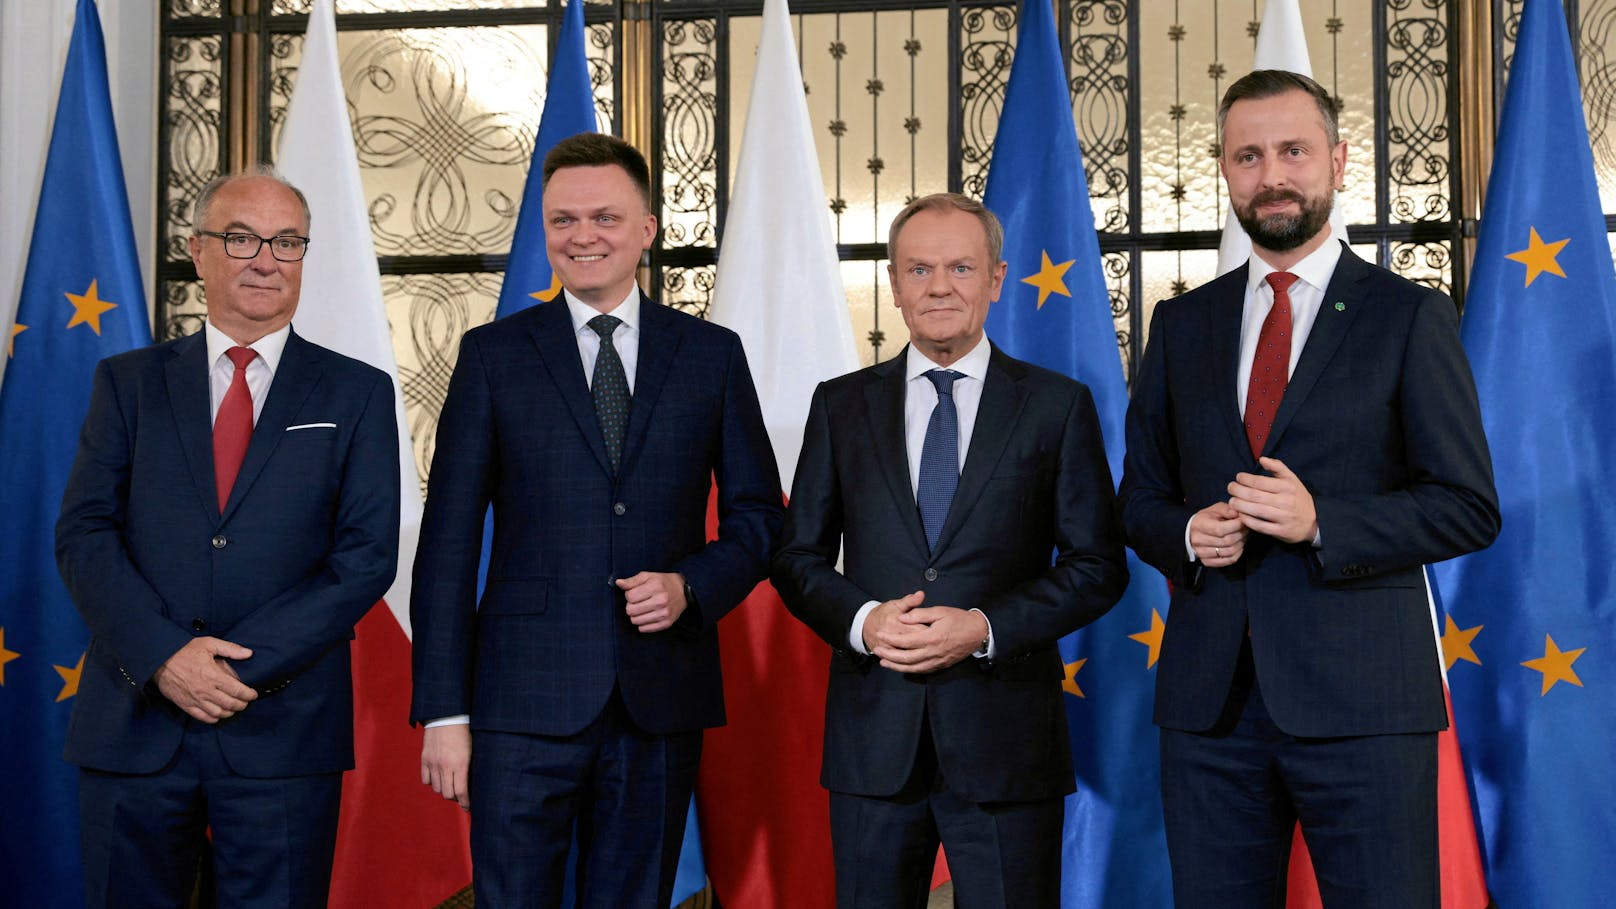 So soll die neue (mehrheitsfähige) polnische Regierung aussehen: Ein Bündnis aus den Linken, dem Dritten Weg und der Bürgerkoalition. Designierter Premierminister soll Donald Tusk (2.v.r.) werden.